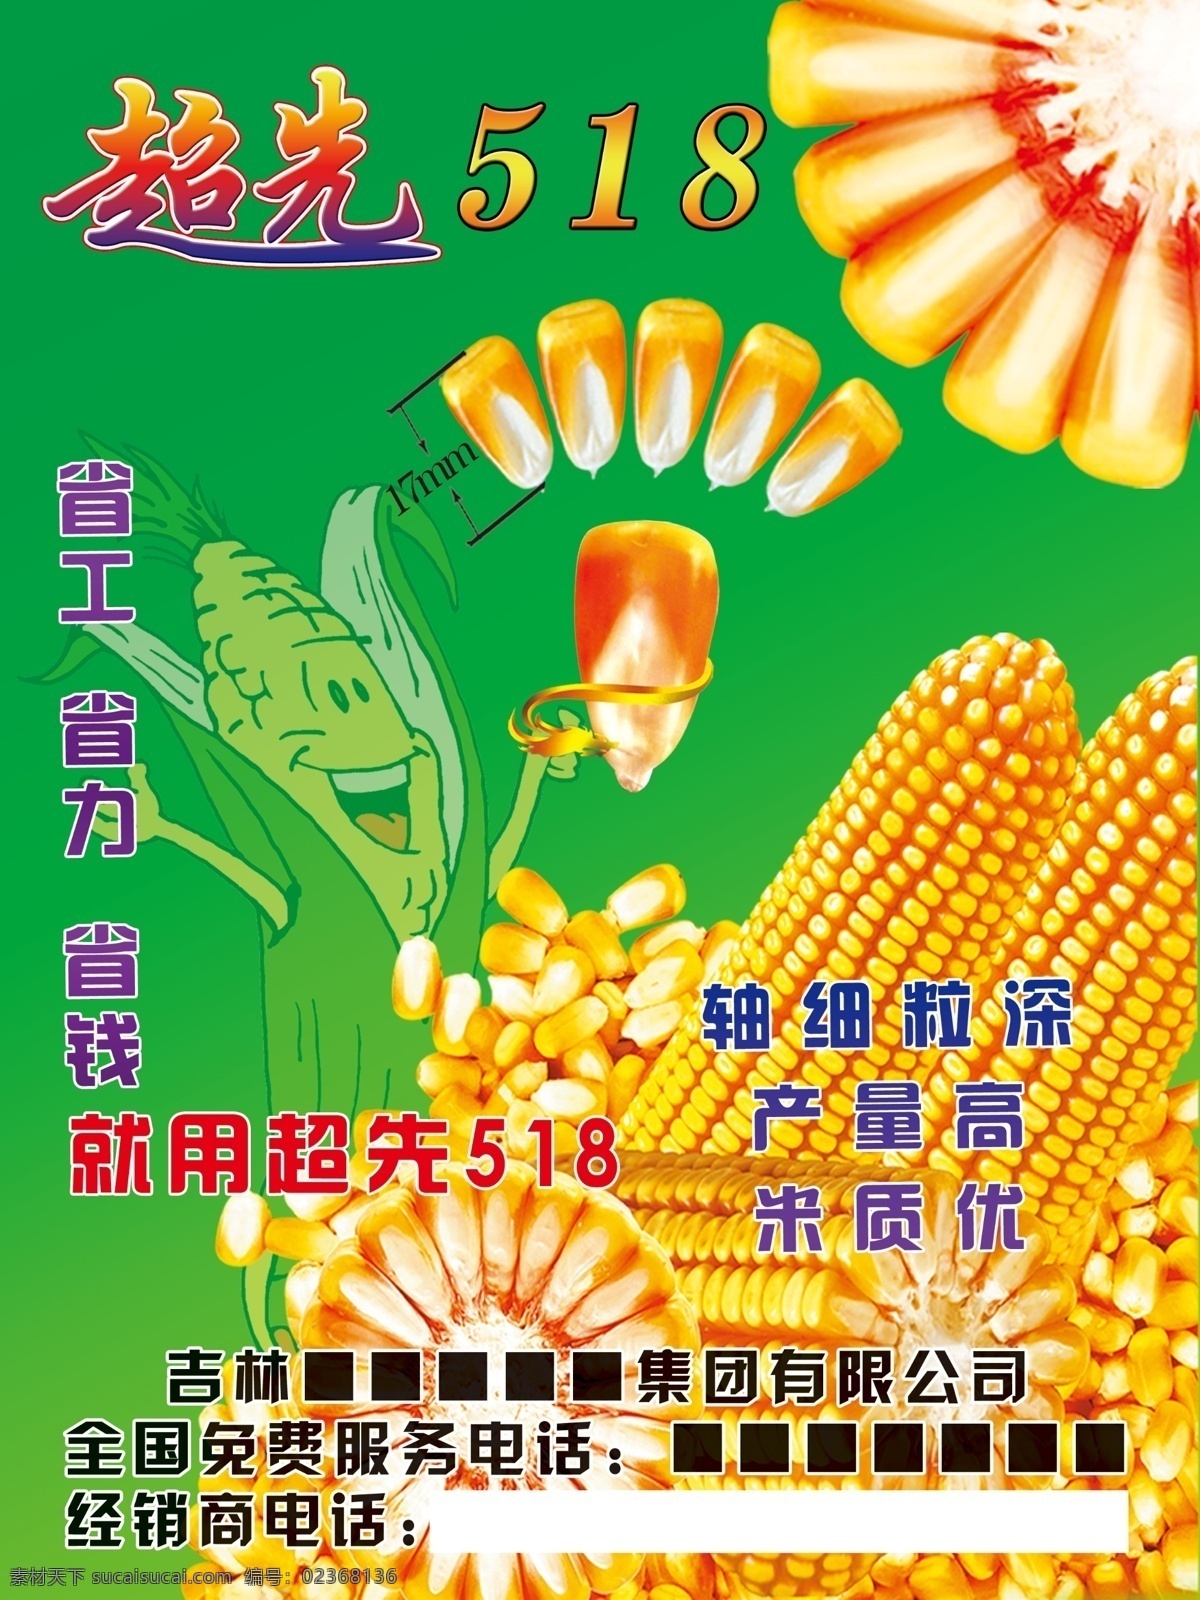 玉米宣传 超先518 玉米 背景素材 籽粒 半切面 卡通玉米 广告设计模板 源文件